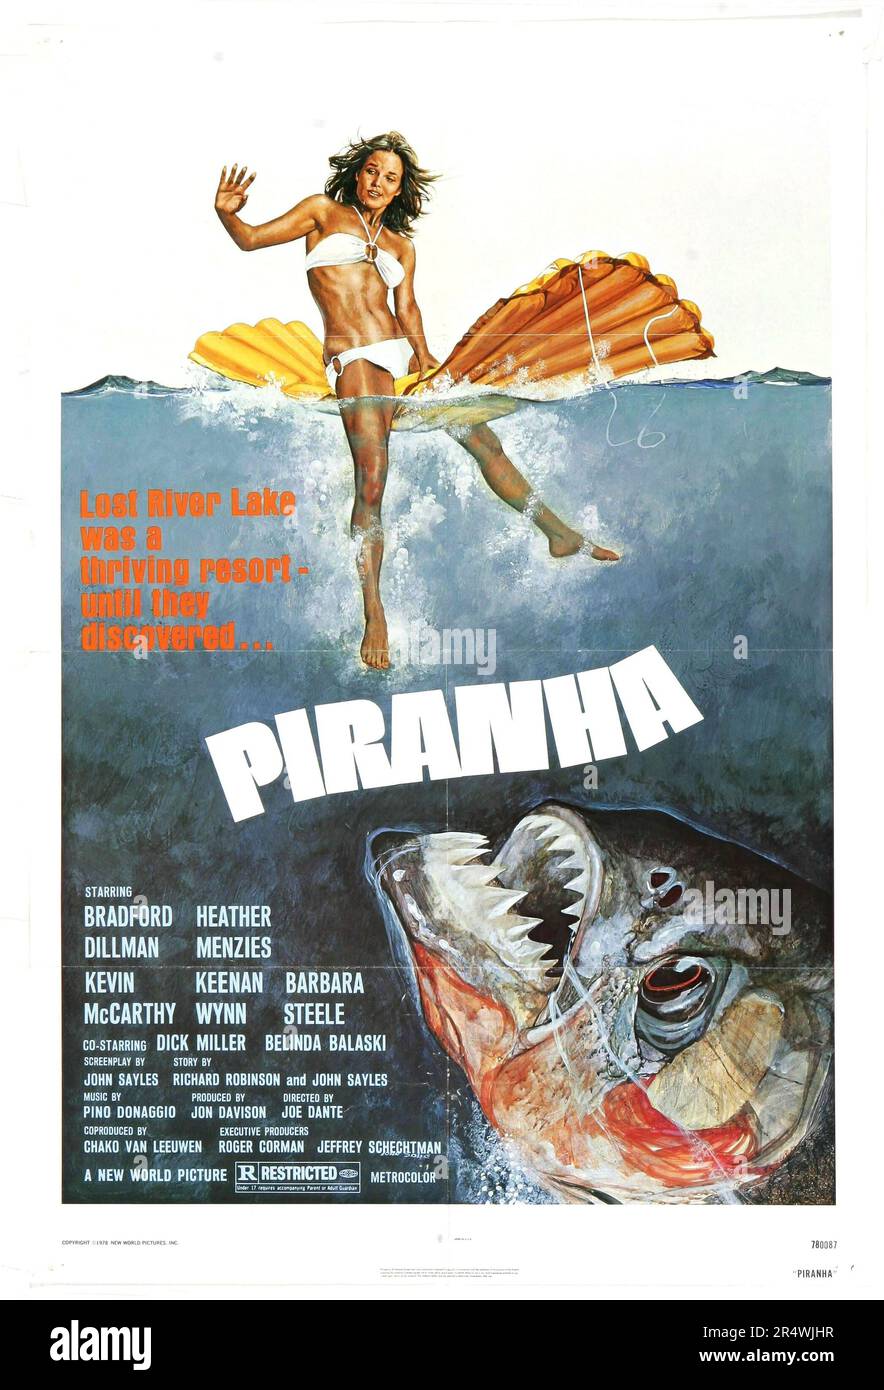 Piranha ist ein 1978 amerikanischen B Film über einen Schwarm von killer Piranhas. Es wurde von Joe Dante Regie und Hauptrolle Bradford Dillman Heather Menzies. Der Film ist eine Parodie auf den Film 1975 Backen und inspirierte eine ganze Reihe von Filmen mit einem ähnlichen Thema. Stockfoto